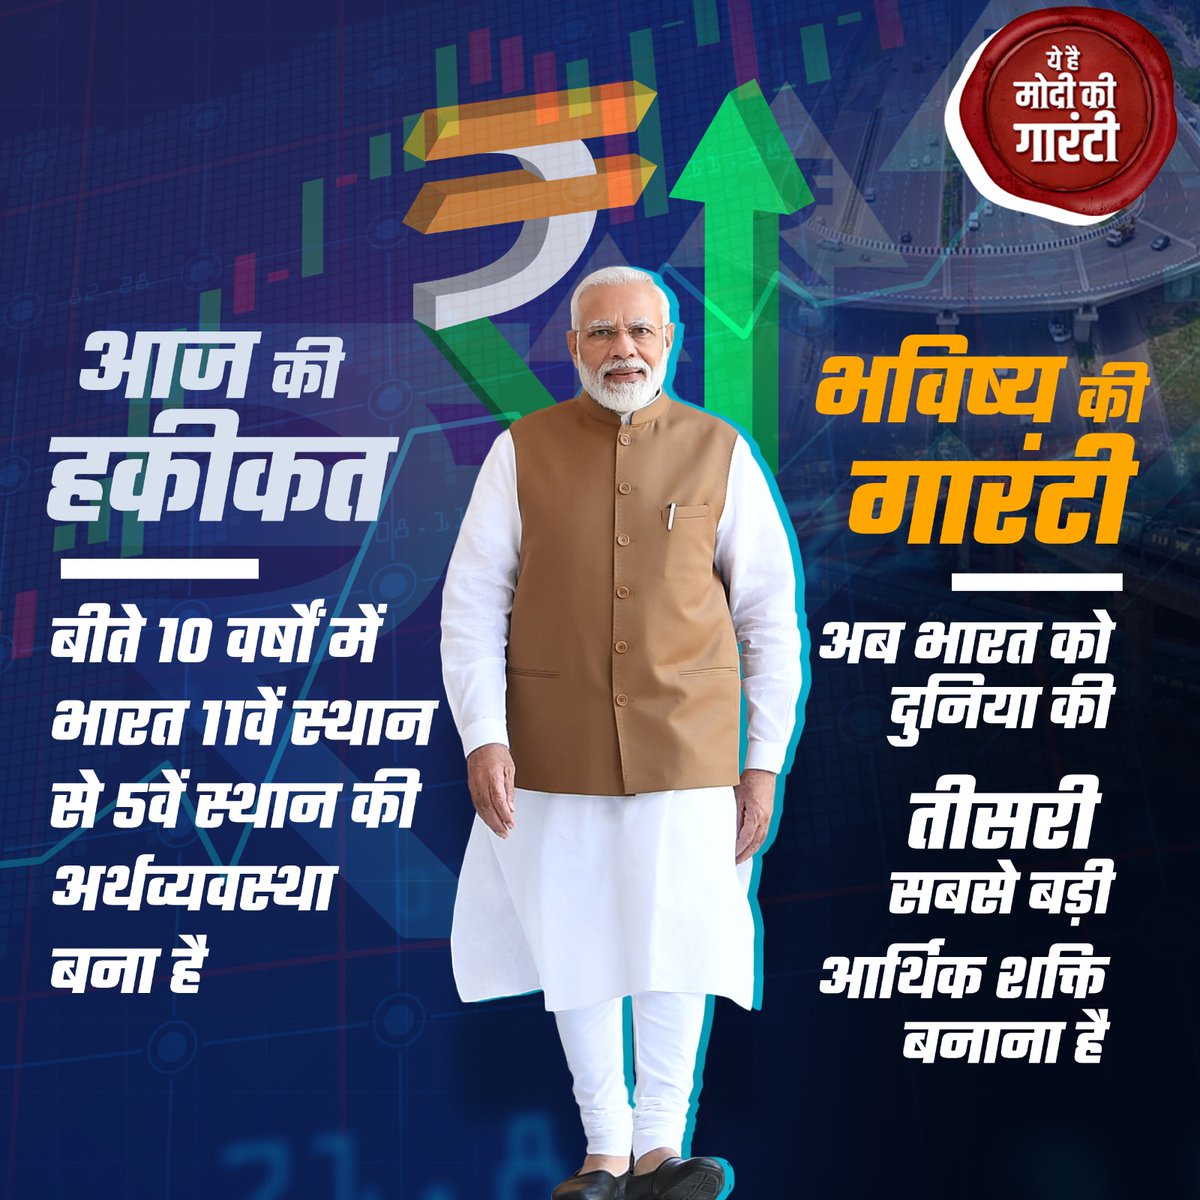 'हमारे तीसरे कार्यकाल में भारत, दुनिया की तीसरी सबसे बड़ी अर्थव्यवस्था बनेगा'... ये है 

#ModiKiGuarantee 

#PhirEkBaarModiSarkar